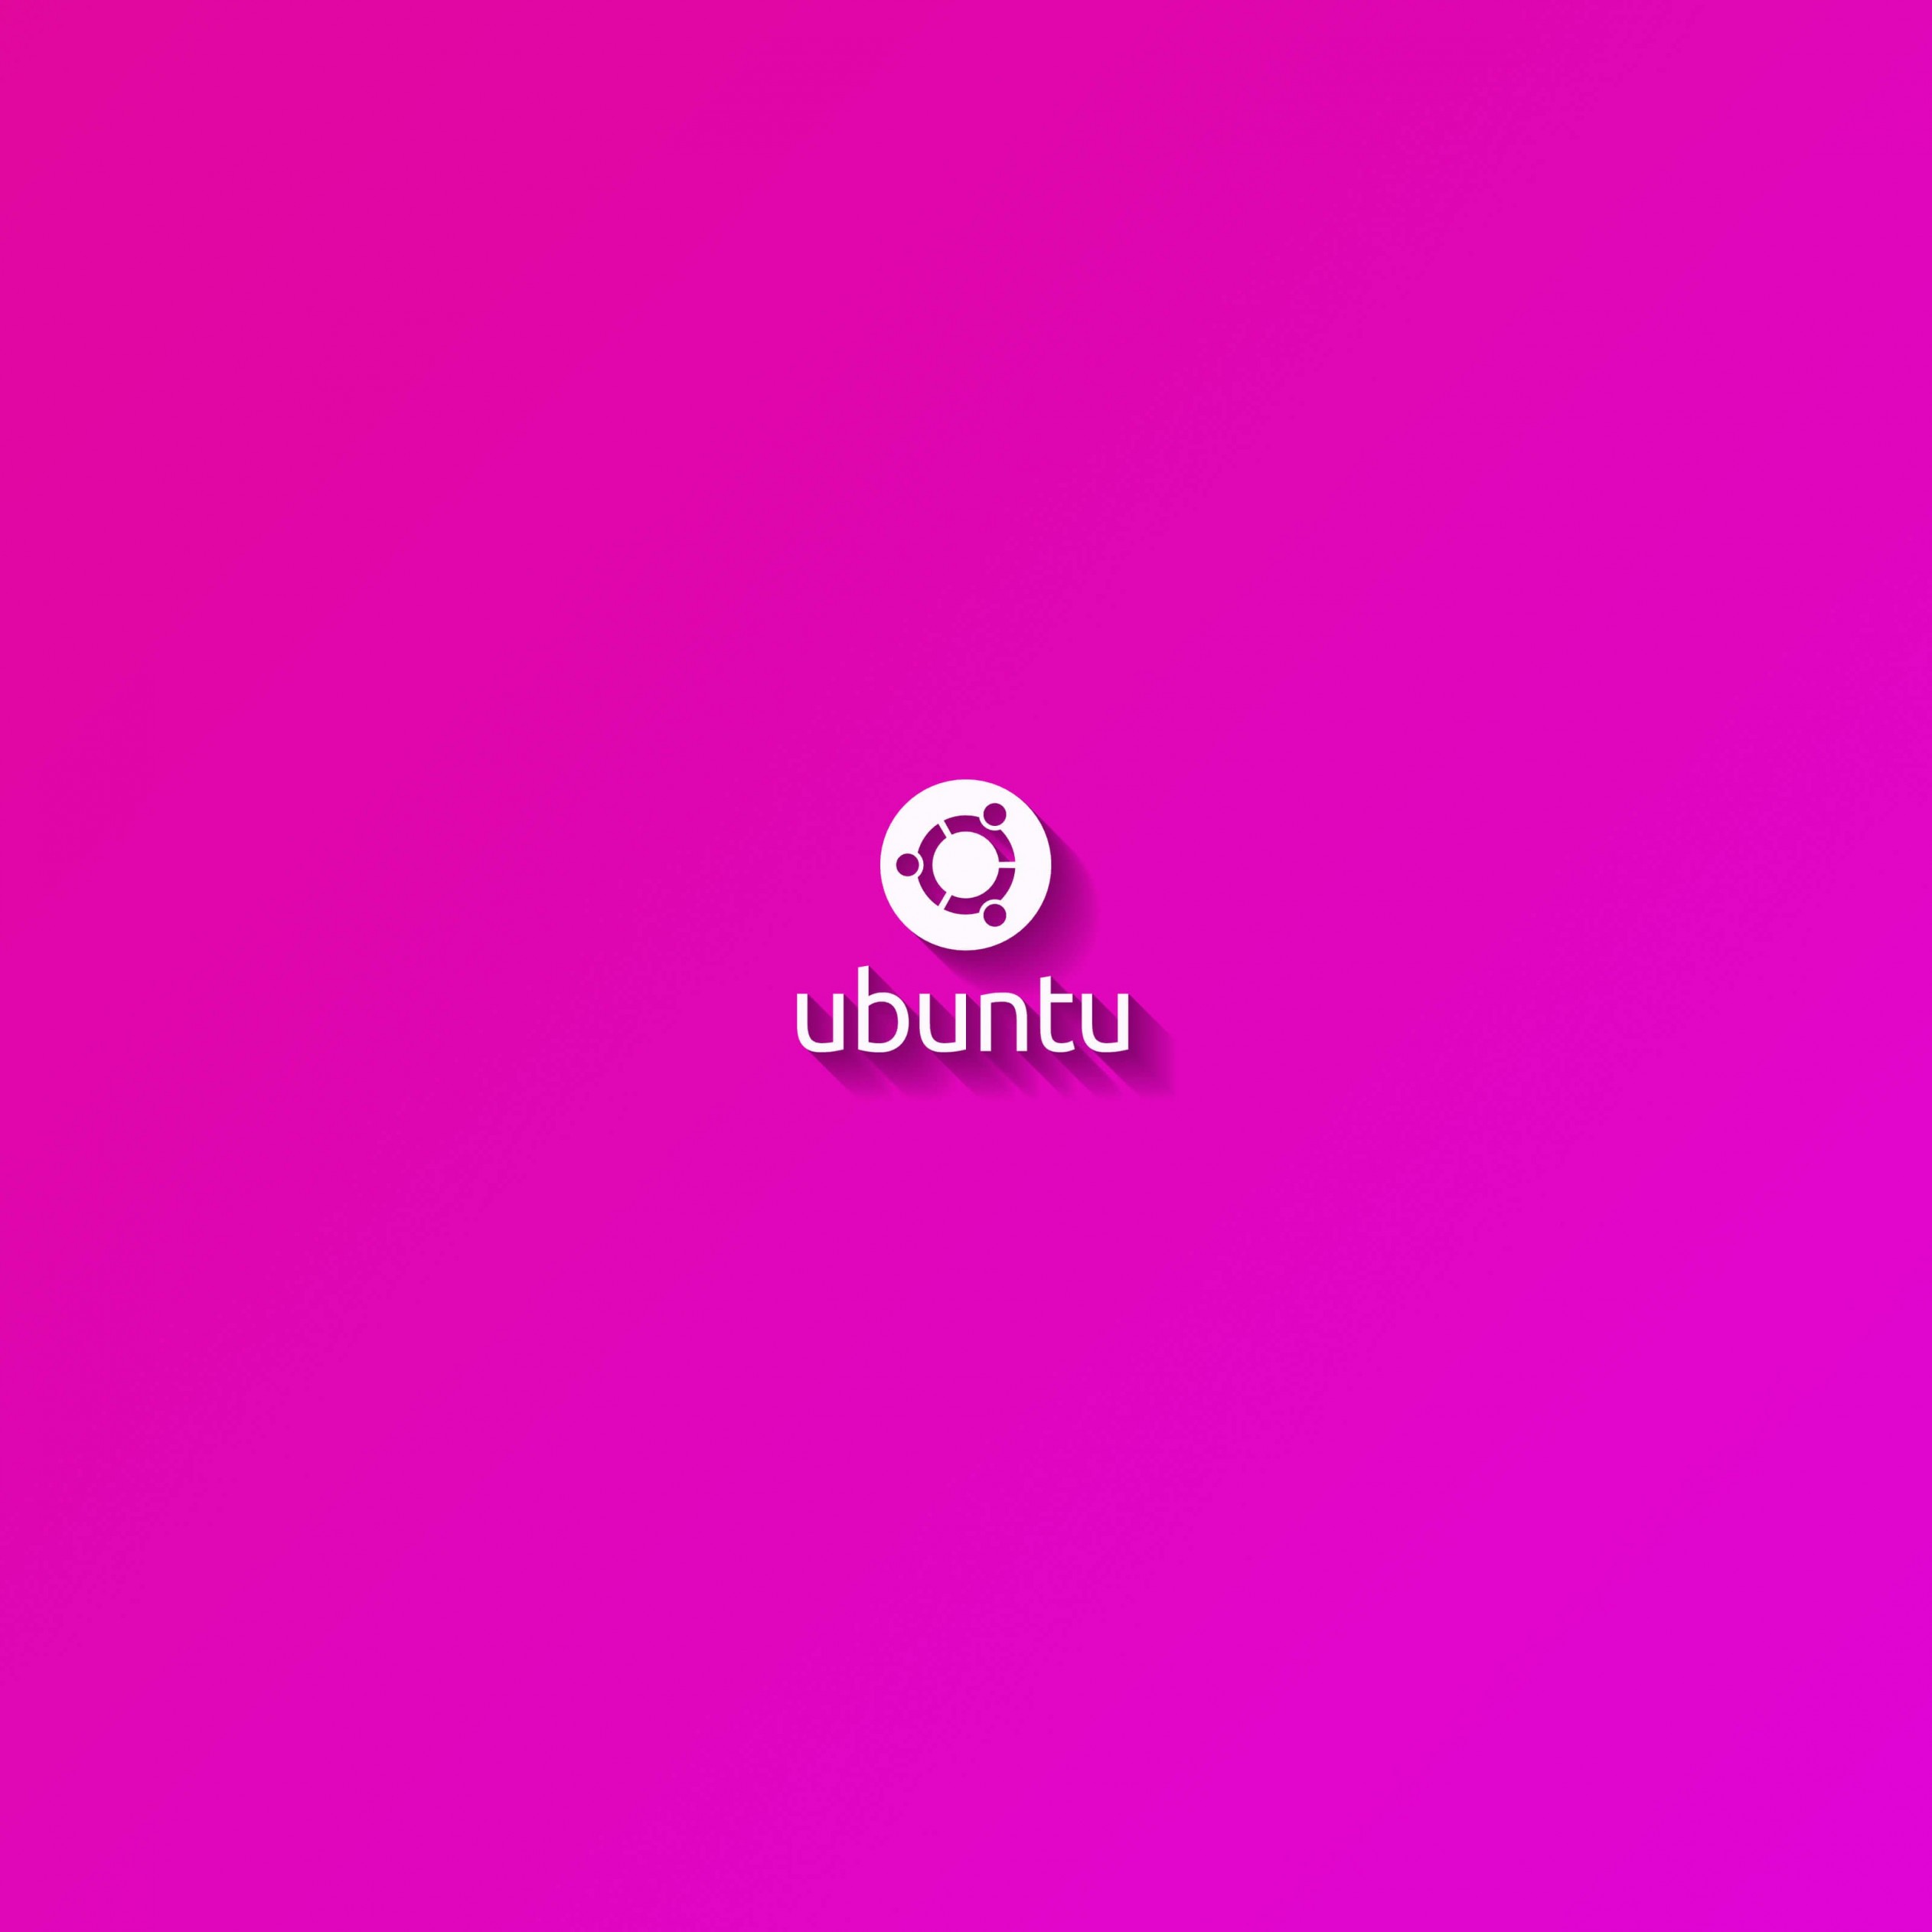 Ubuntu Flat Shadow Pink Wallpaper for Apple iPad 4